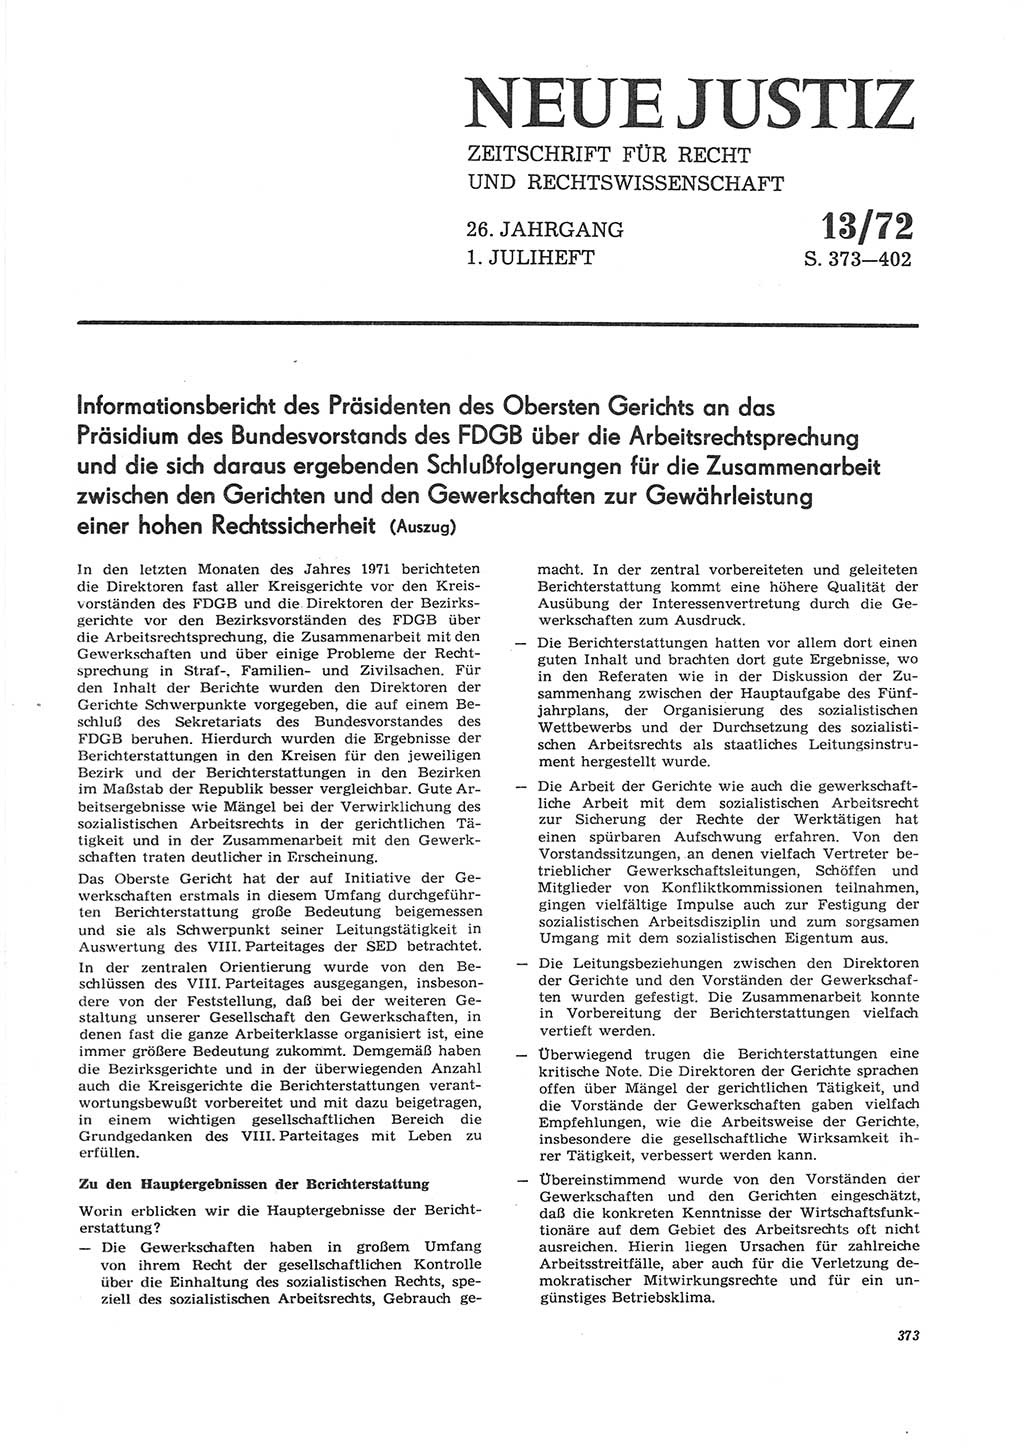 Neue Justiz (NJ), Zeitschrift für Recht und Rechtswissenschaft [Deutsche Demokratische Republik (DDR)], 26. Jahrgang 1972, Seite 373 (NJ DDR 1972, S. 373)